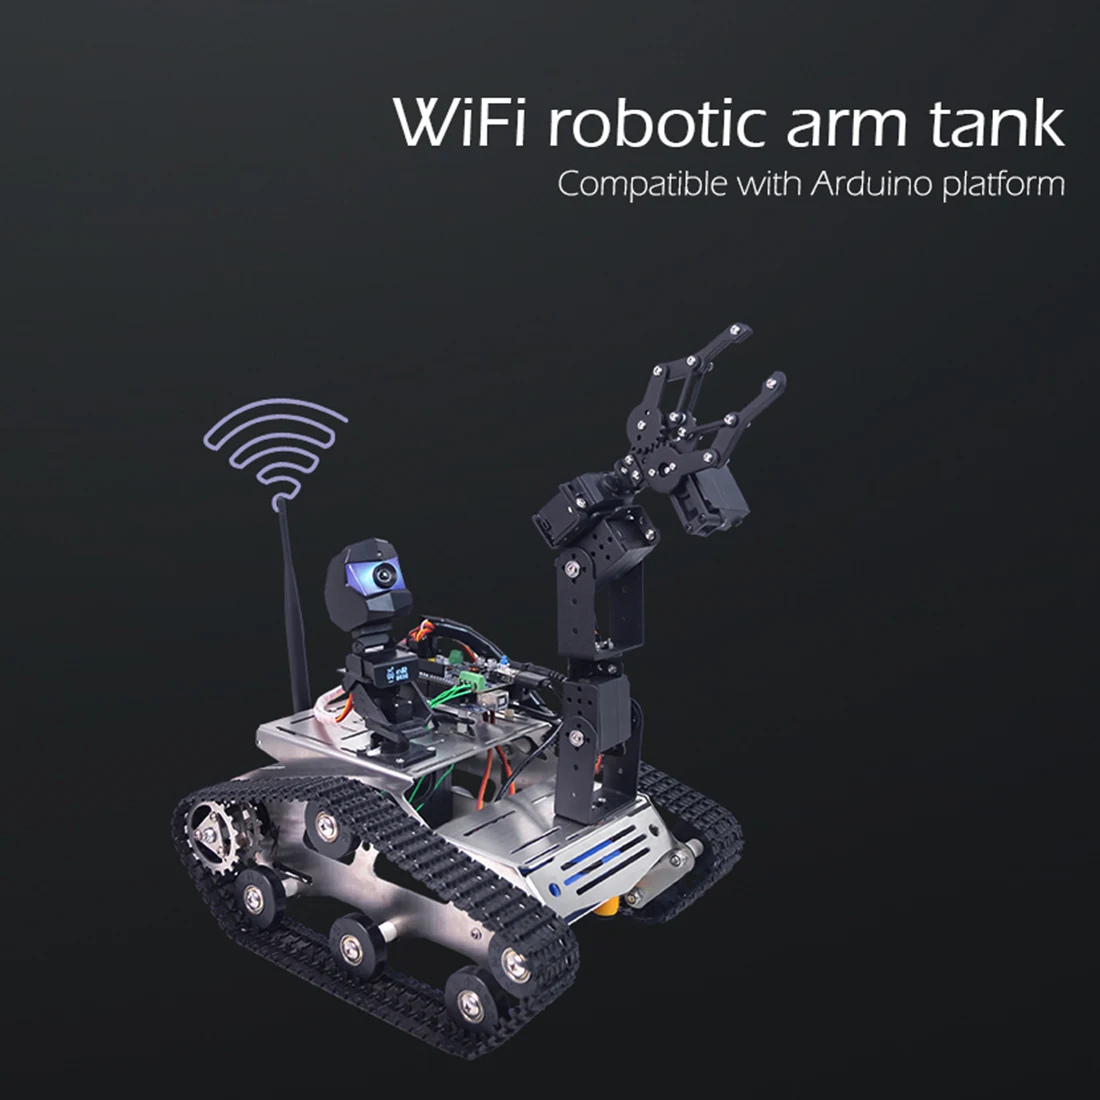 Surwish программируемые игрушки для детей TH WiFi FPV Танк робот автомобиль комплект с рукояткой для Arduino мега-стандартная версия